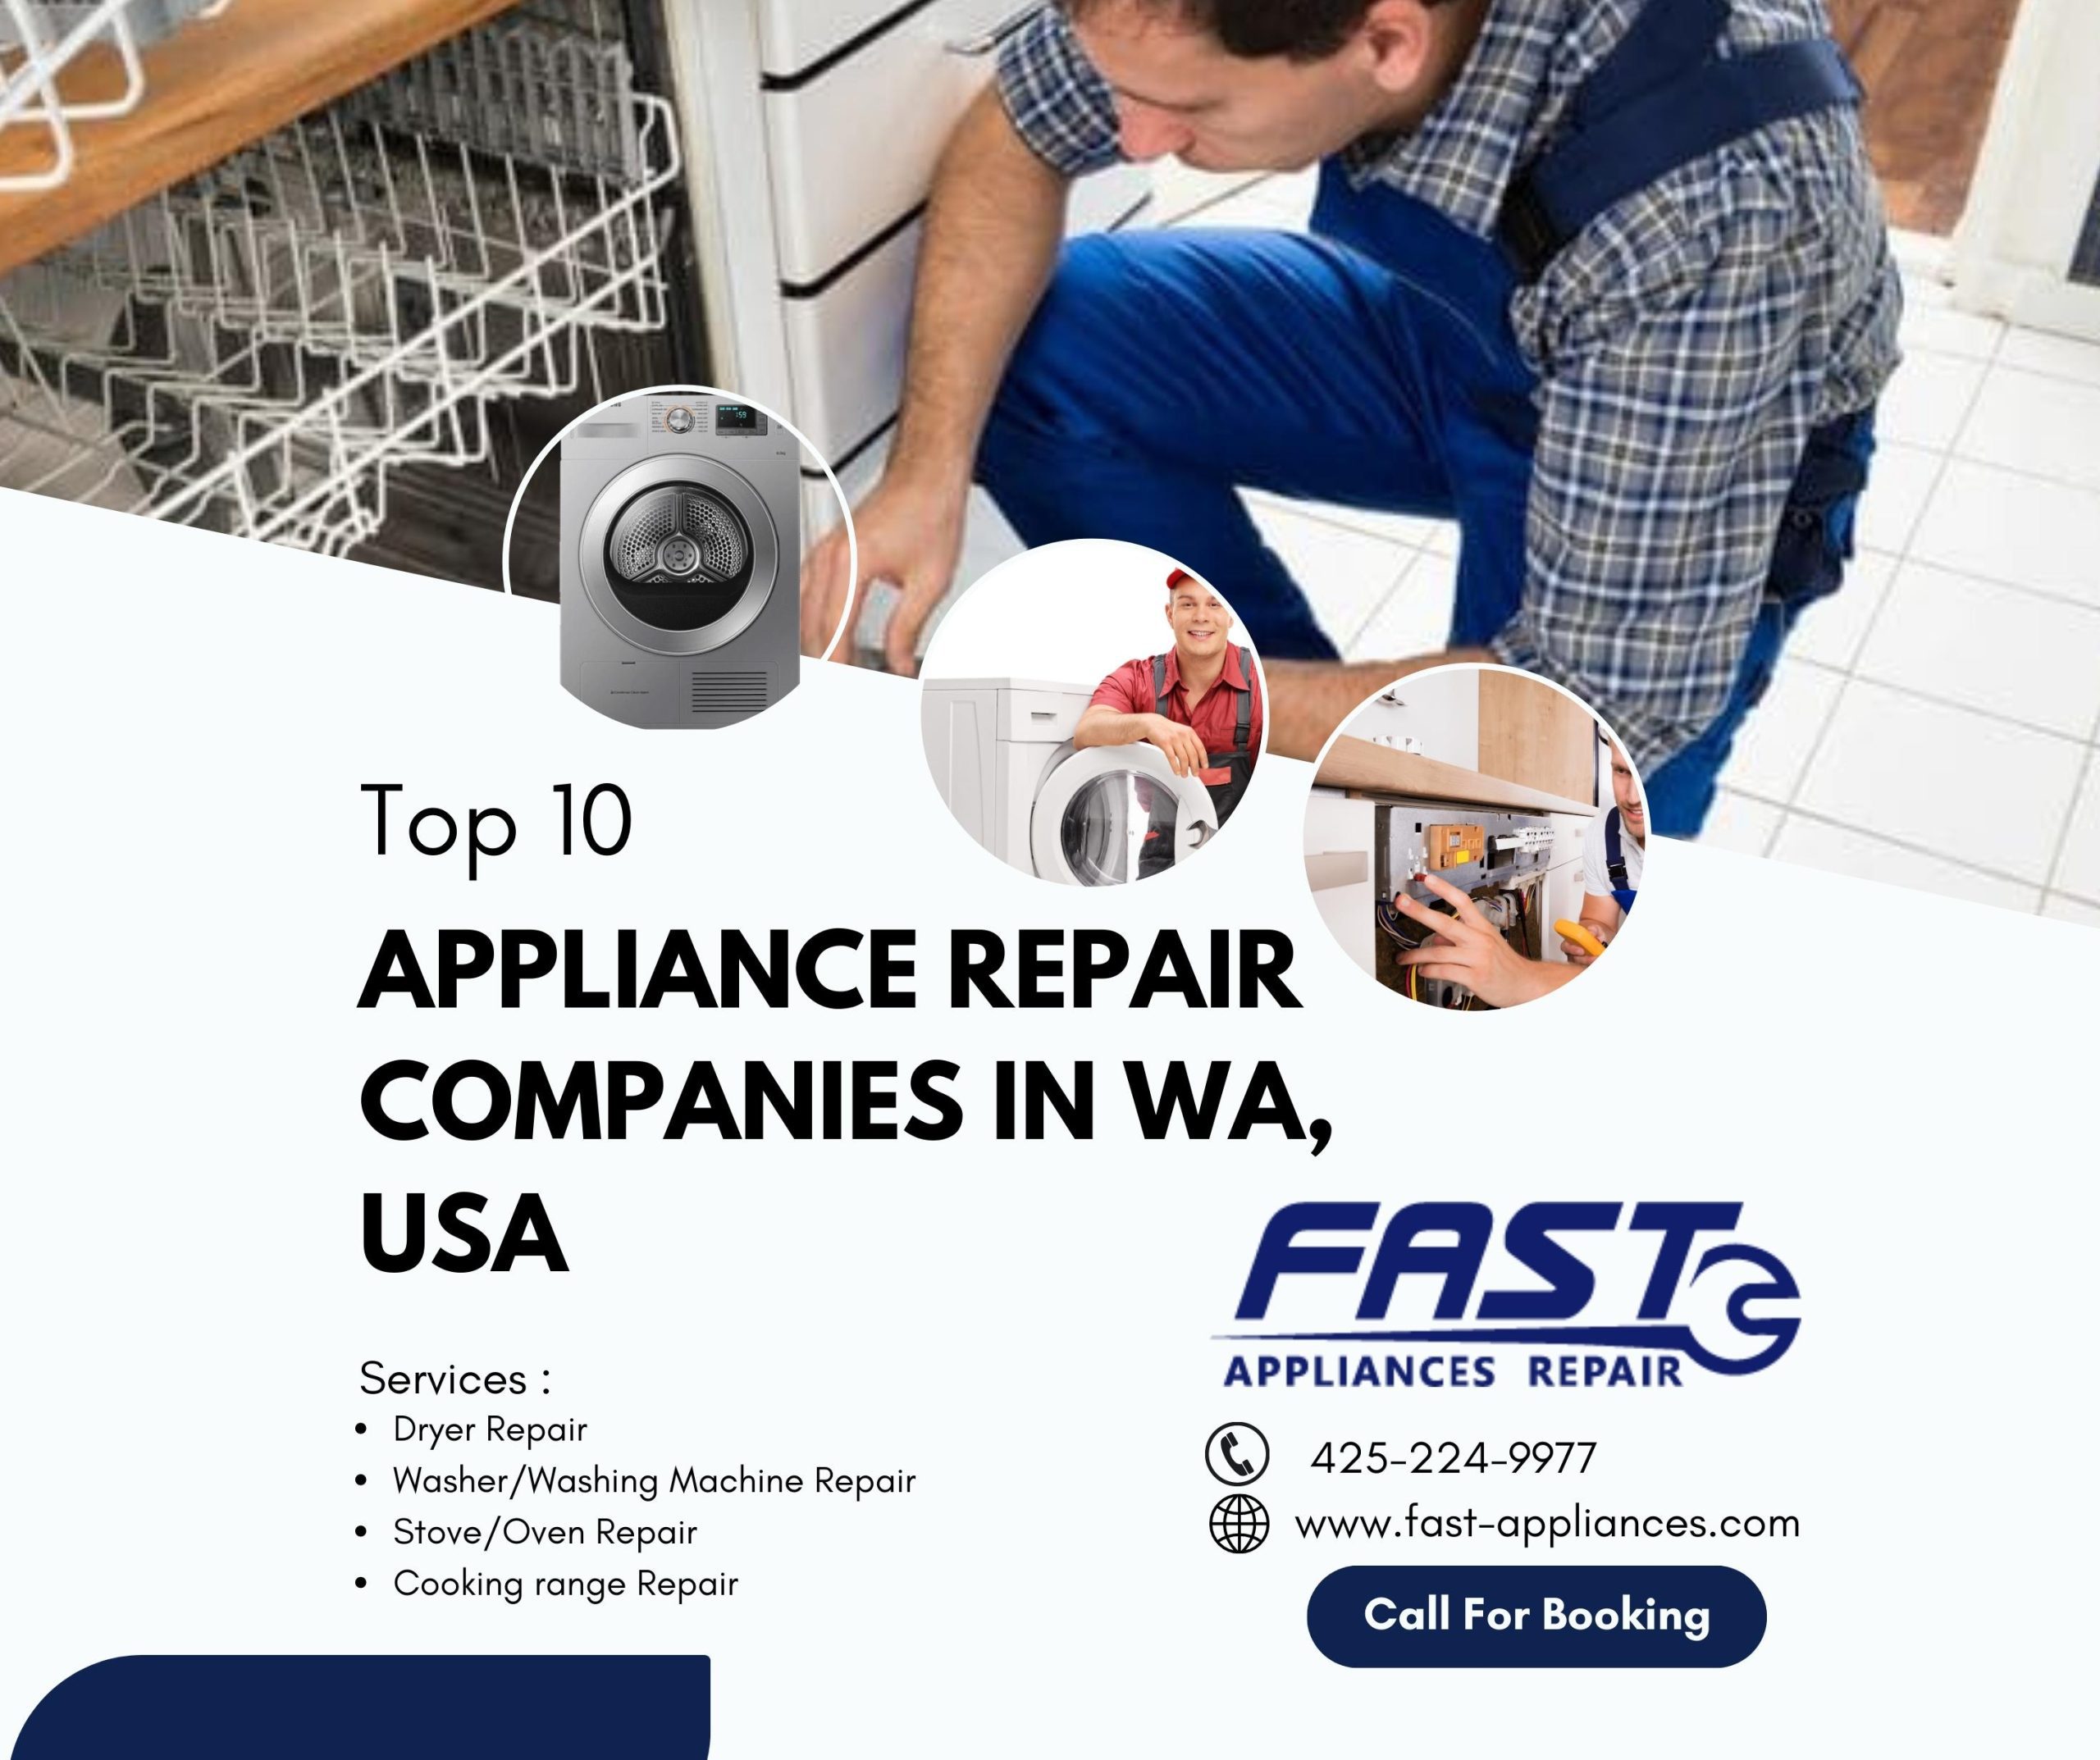 Top 10 appliances repair companies in Wa, USA- Fast Appliances